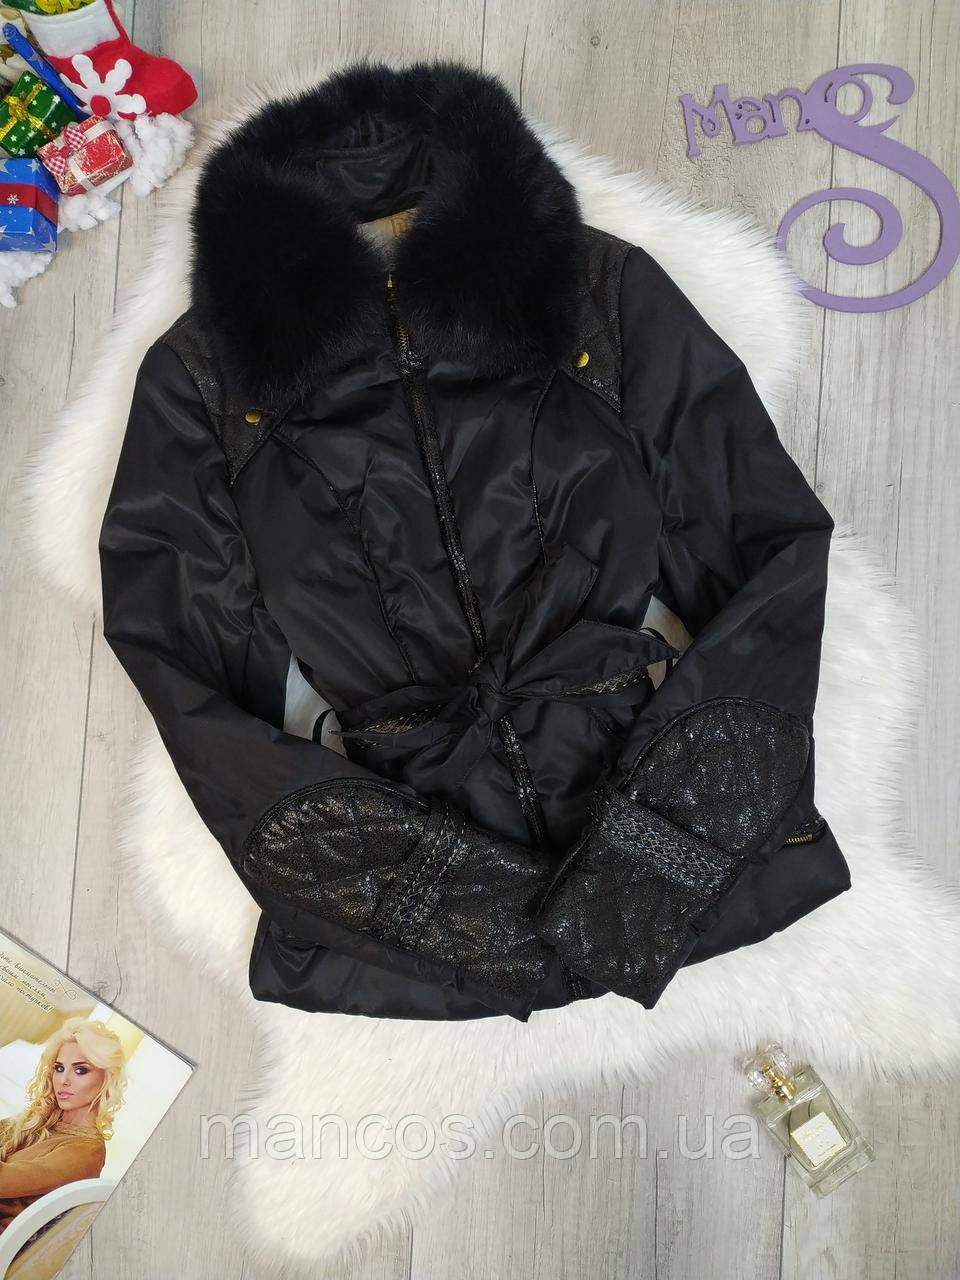 Жіноча куртка De'lizza єврозима з натуральним хутром чорна Розмір S